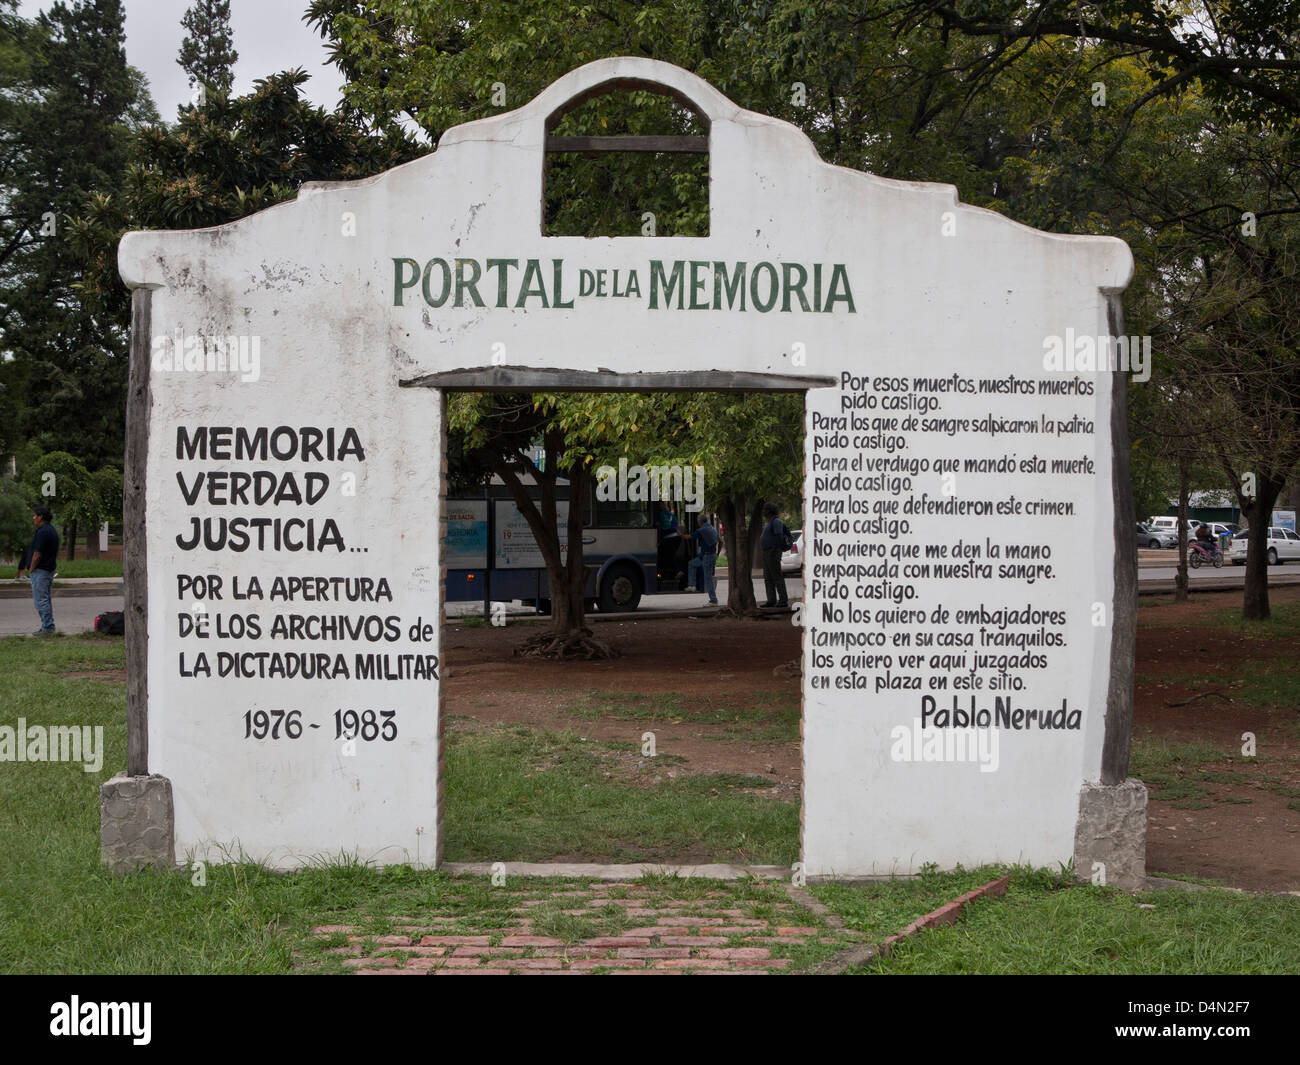 Arco en memoria de los desaparecidos durante la dictadura militar, con las palabras del poeta Pablo Neruda. Salta, Argentina Foto de stock